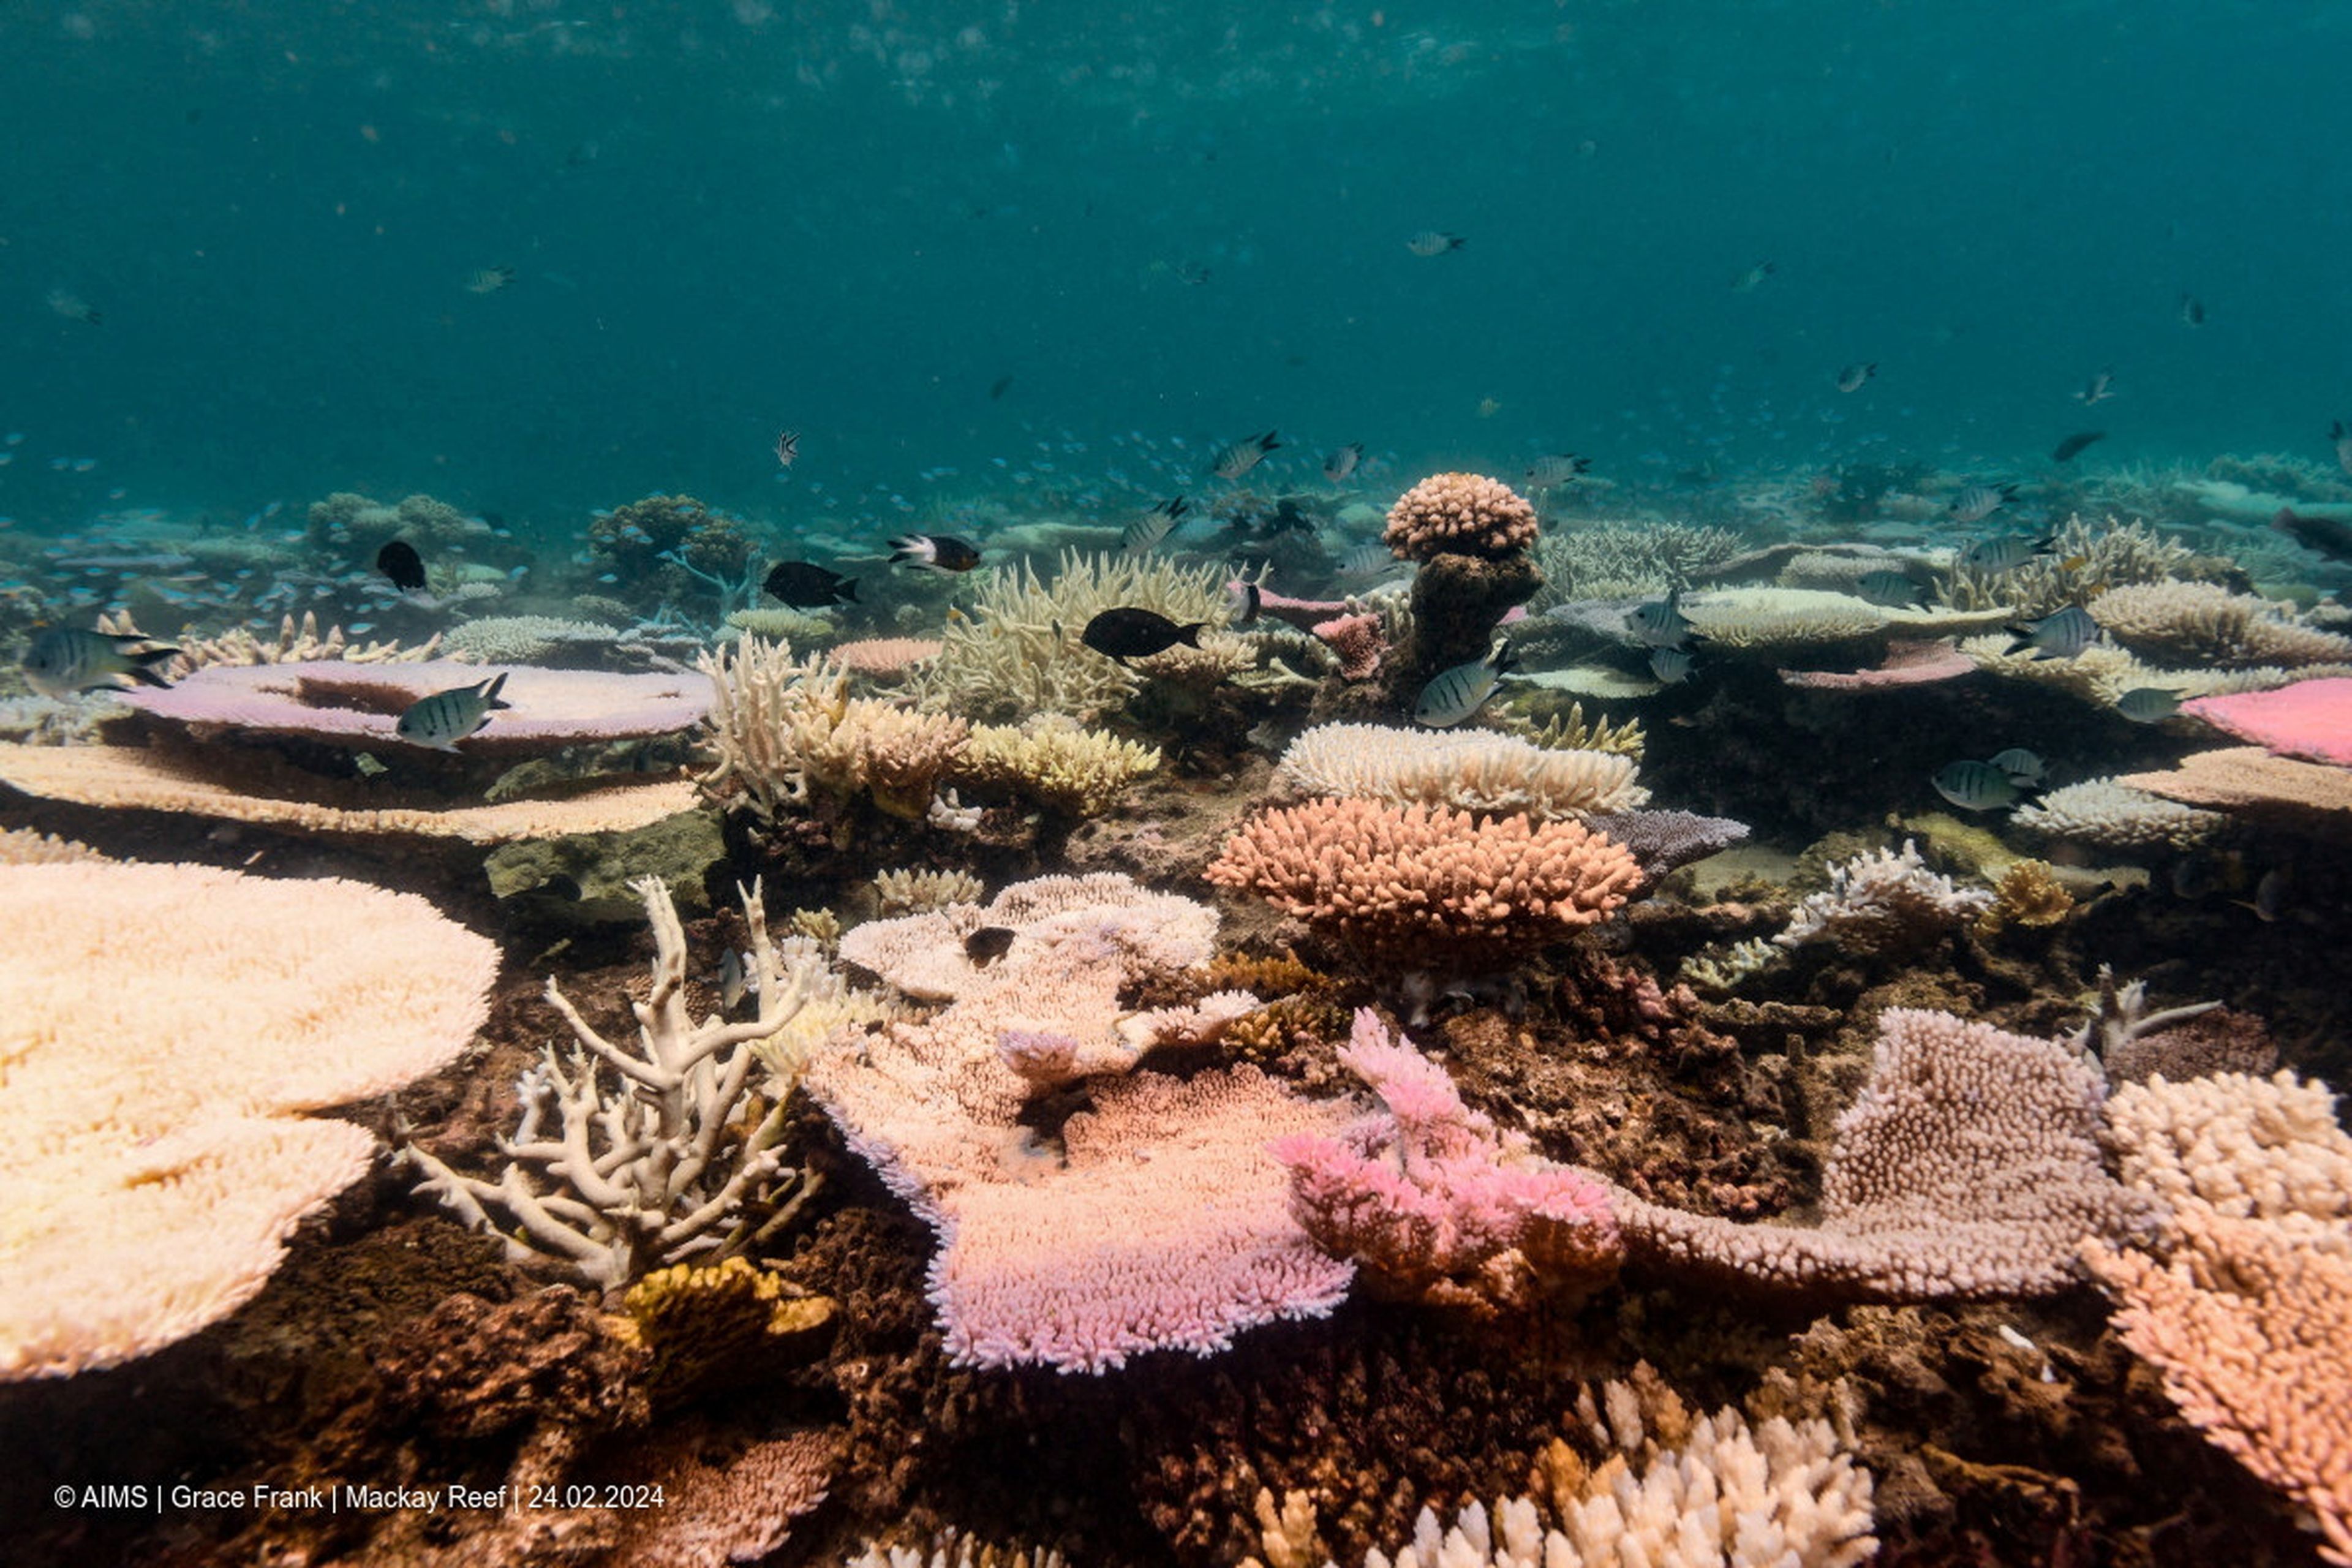 Blanqueamiento de los corales